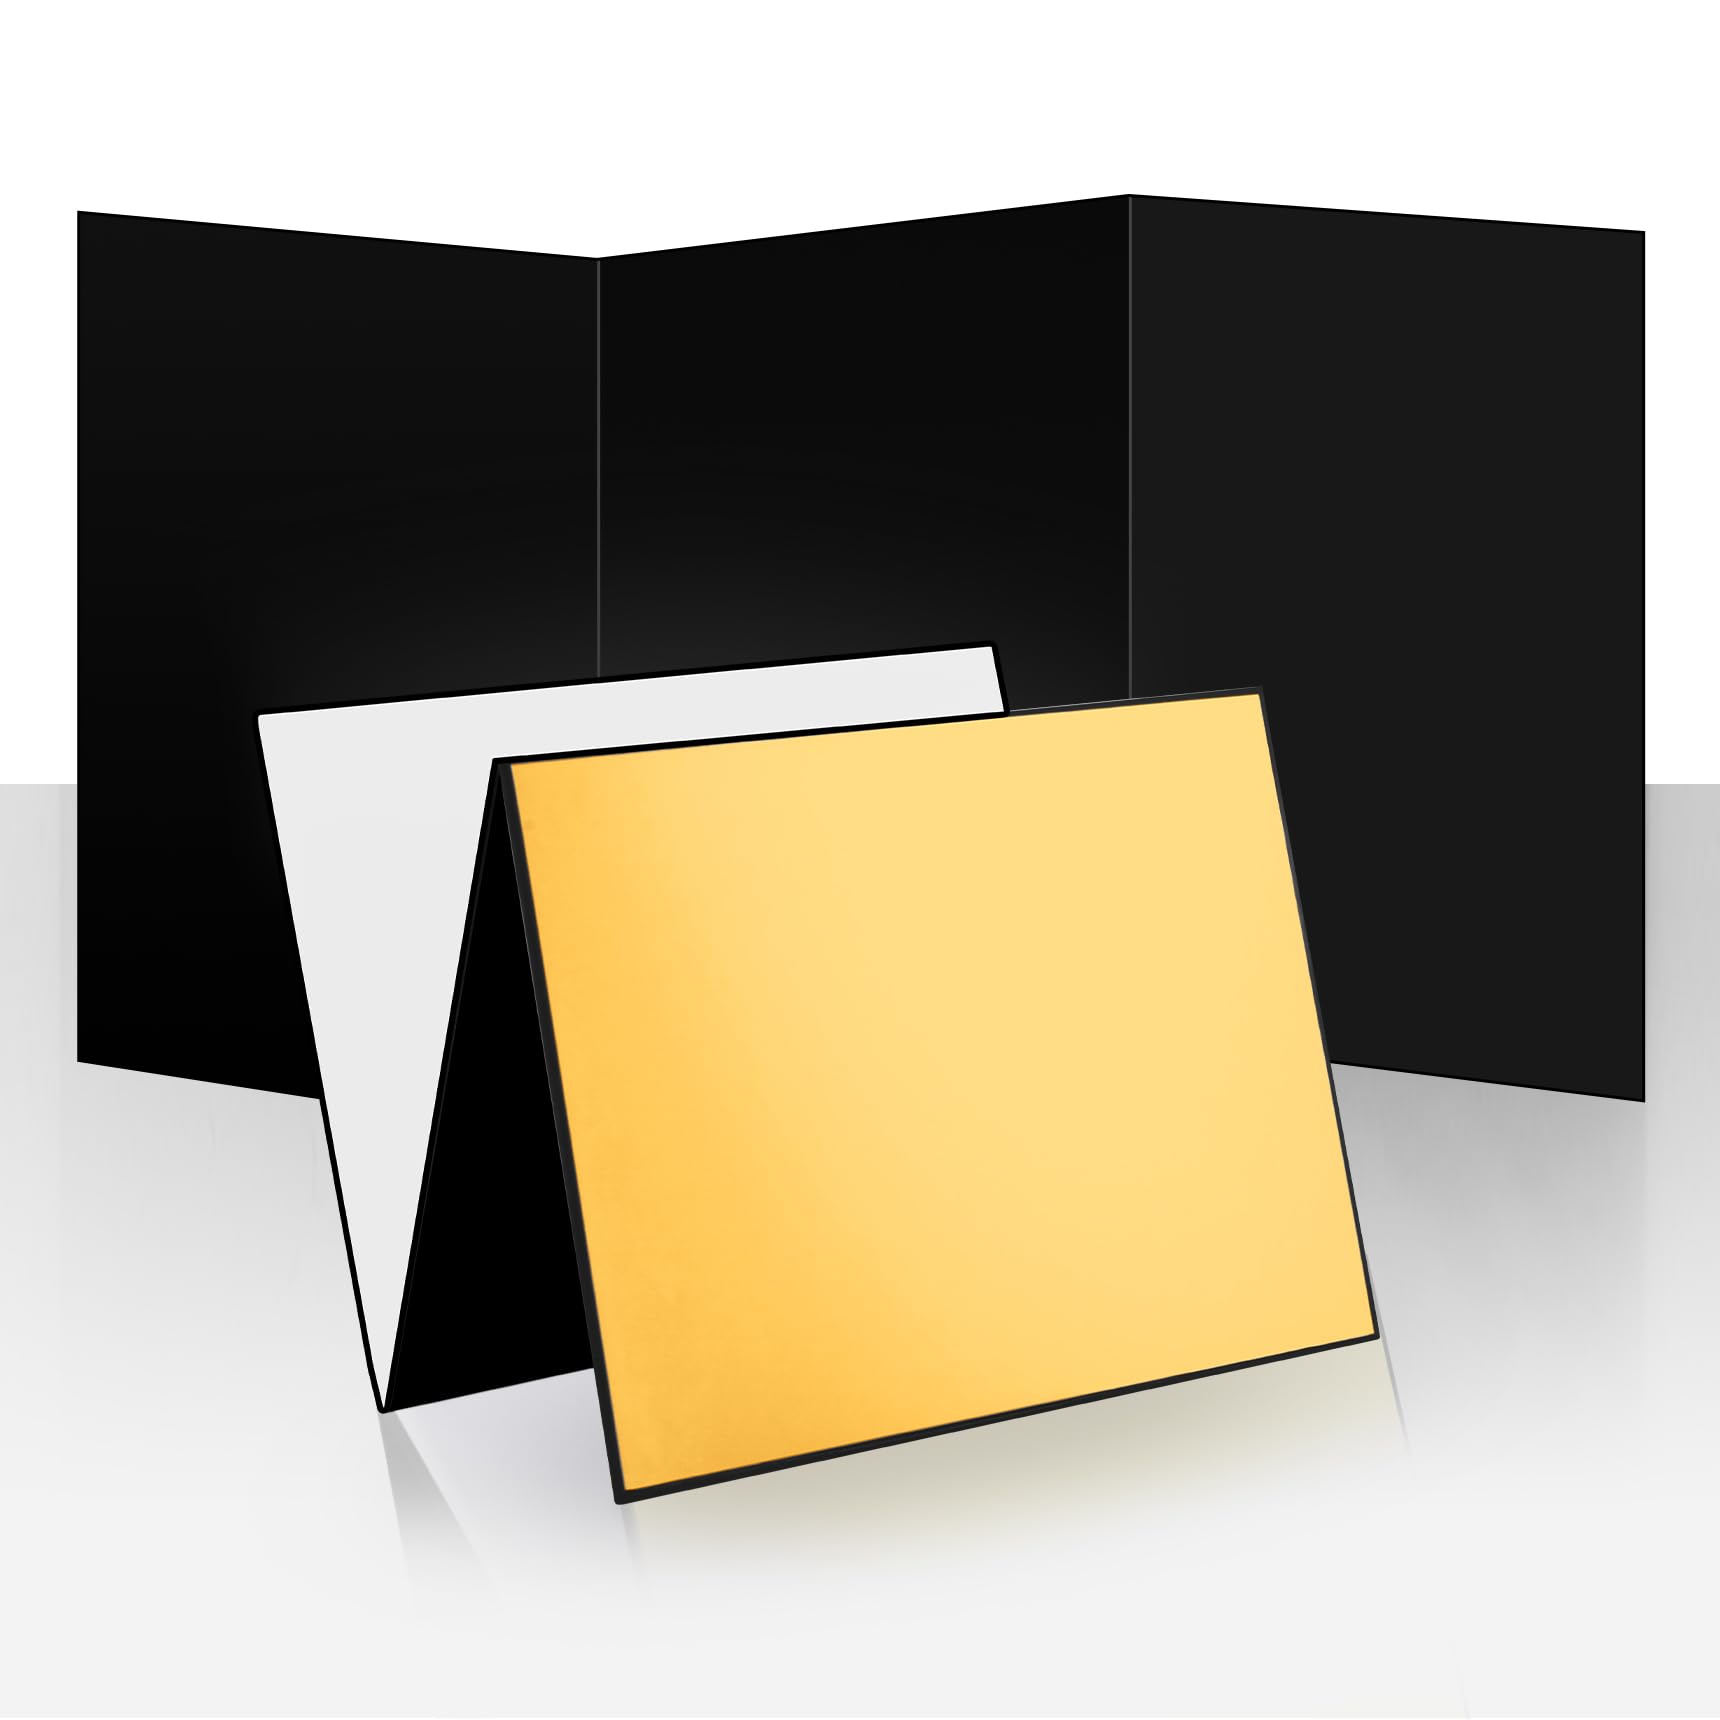 商品情報商品の説明主な仕様 4色：反射板には白黒銀金の4色があり、1面は真っ黒、もう1面は3色があり、複数の組み合わせができ、異なる撮影シーンのニーズに応えることができます。br機能は多様：白色面は光量補充で、銀色面は光を反射して、黒色面は光を吸収して輪郭を描くことができます。反射板は折りたたむことができ、異なる色の面を組み合わせて使用することができます。br折りたたみ式：レフ板は折りたたみ式で、収納が簡単で、縦に広げて使うことも、横に折りたたんで使うこともできます。br用途は多様：本製品はデスクトップ撮影、美食、ジュエリー、化粧品などの小物撮影に適用できる。補光、吸光、輪郭勾配などのニーズにも簡単に対応できます。br適用：本製品は軽量で携帯しやすく収納しやすく、プロカメラマンのビジネス撮影ニーズにも適しており、一般の写真愛好家も簡単に使用することができます。